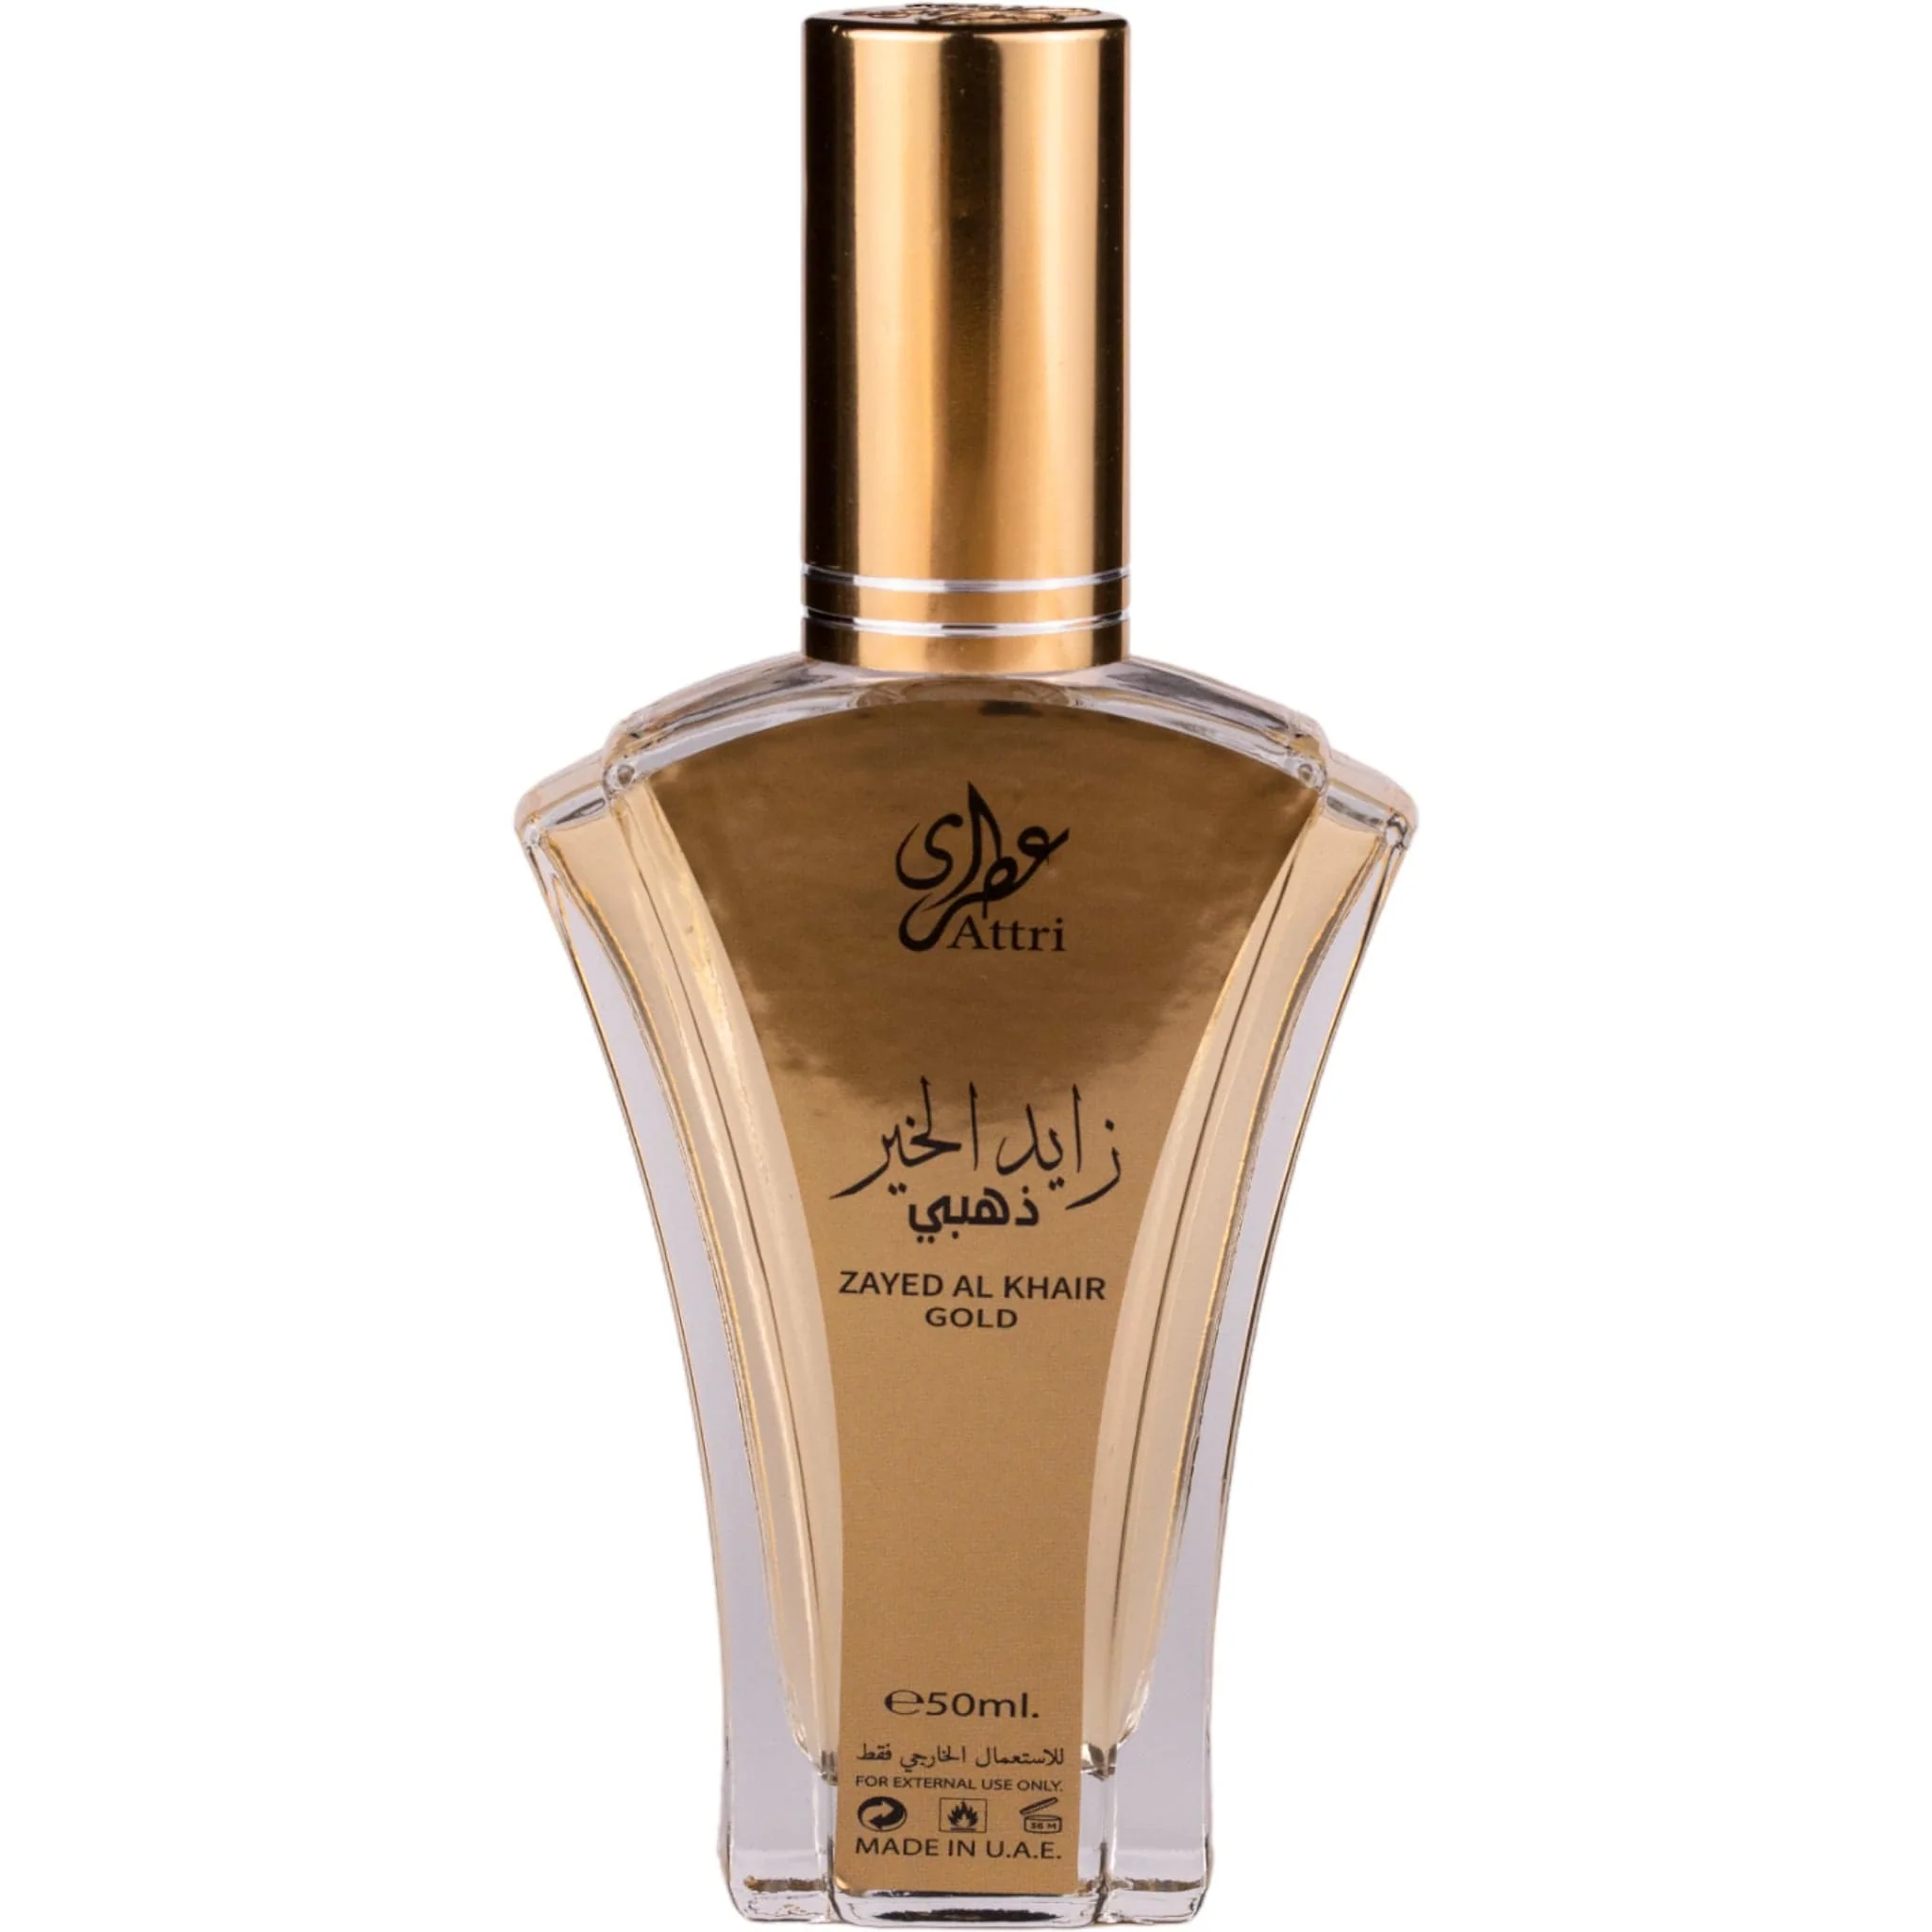 Zayed Al Khair Gold – EAU DE PARFUM